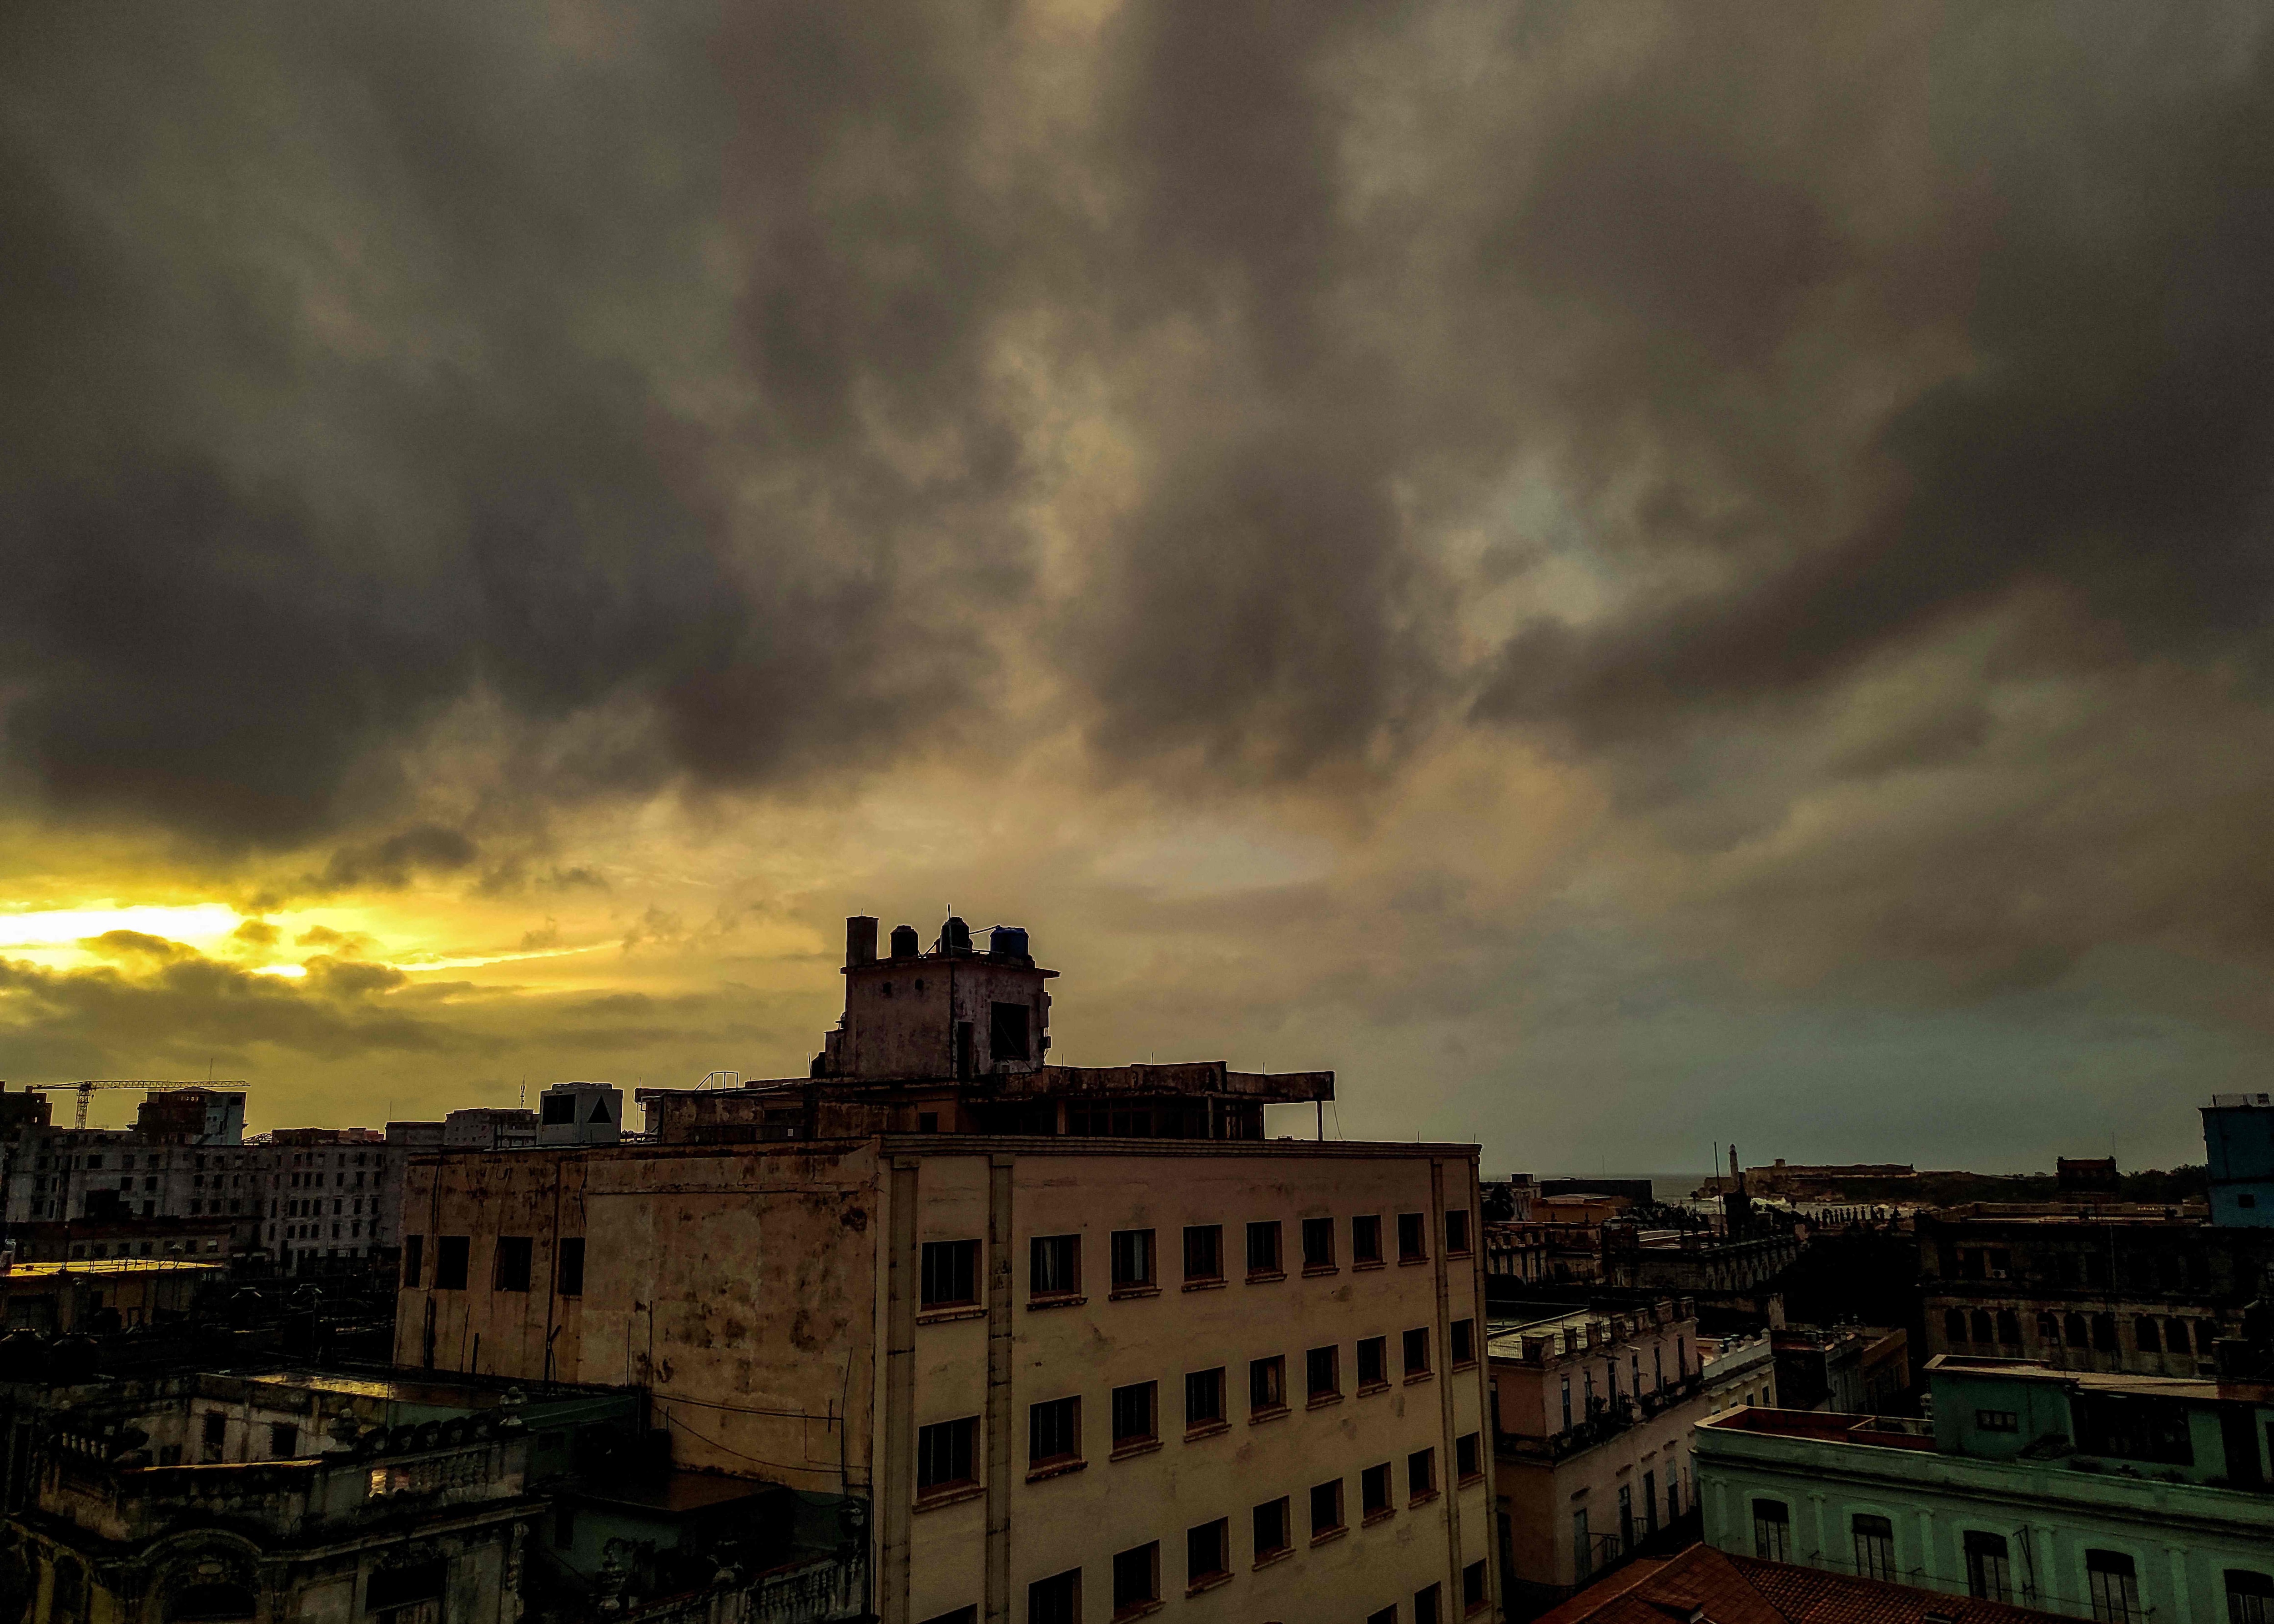 Vista del atardecer en La Habana, el 27 de septiembre de 2022 tras el paso del huracán Ian. (Foto de YAMIL LAGE / AFP)